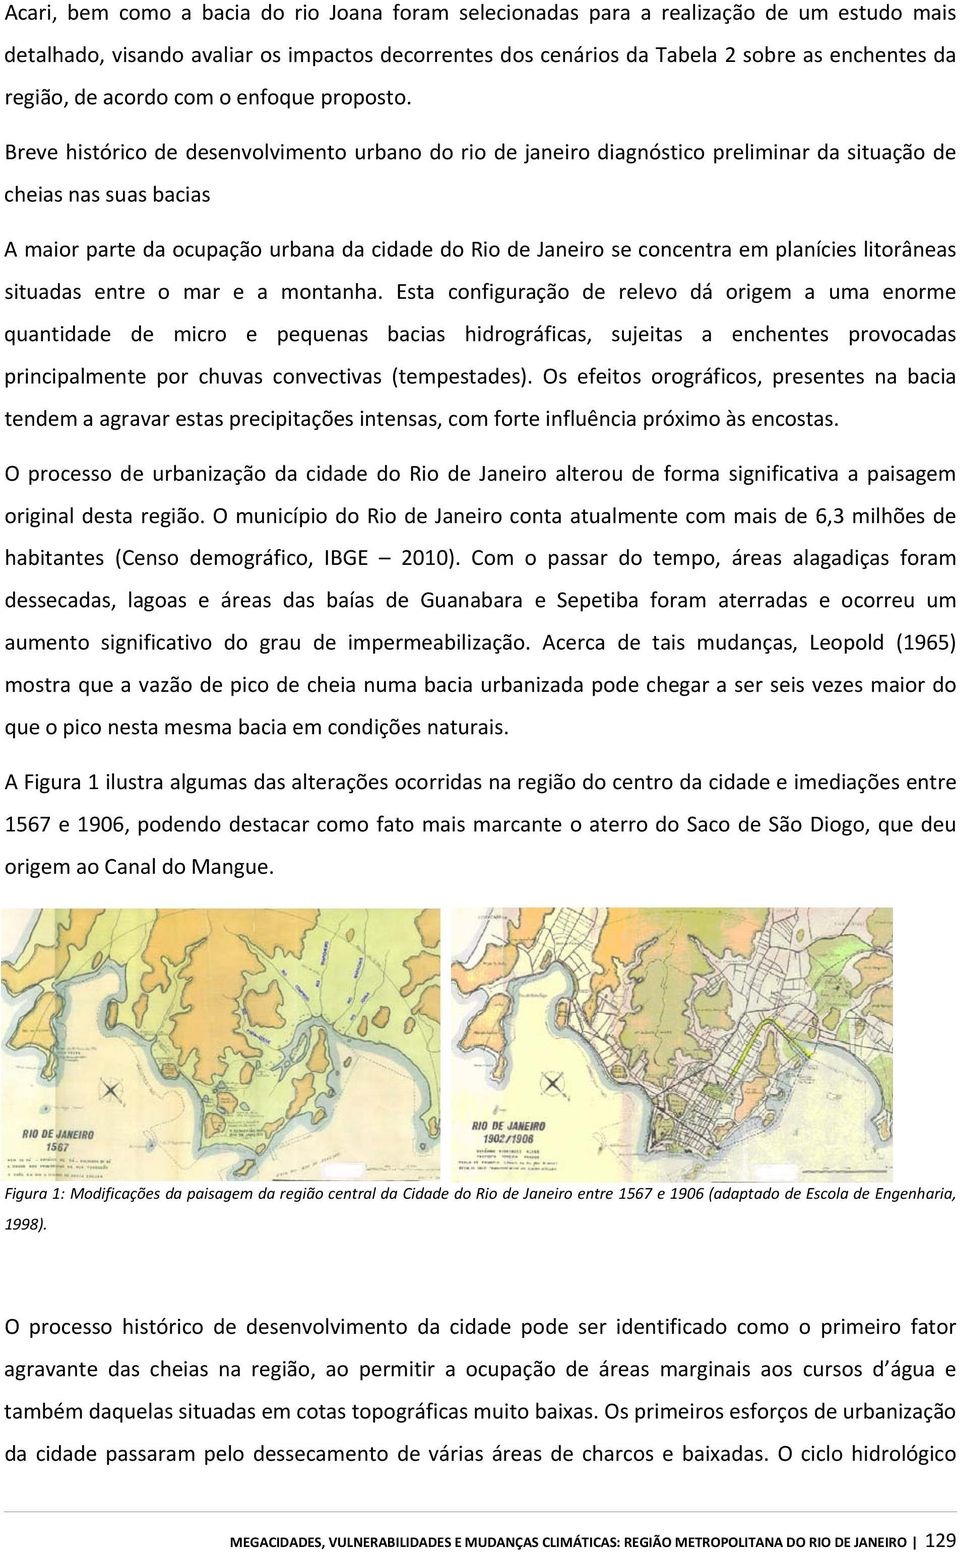 Breve histórico de desenvolvimento urbano do rio de janeiro diagnóstico preliminar da situação de cheias nas suas bacias A maior parte da ocupação urbana da cidade do Rio de Janeiro se concentra em